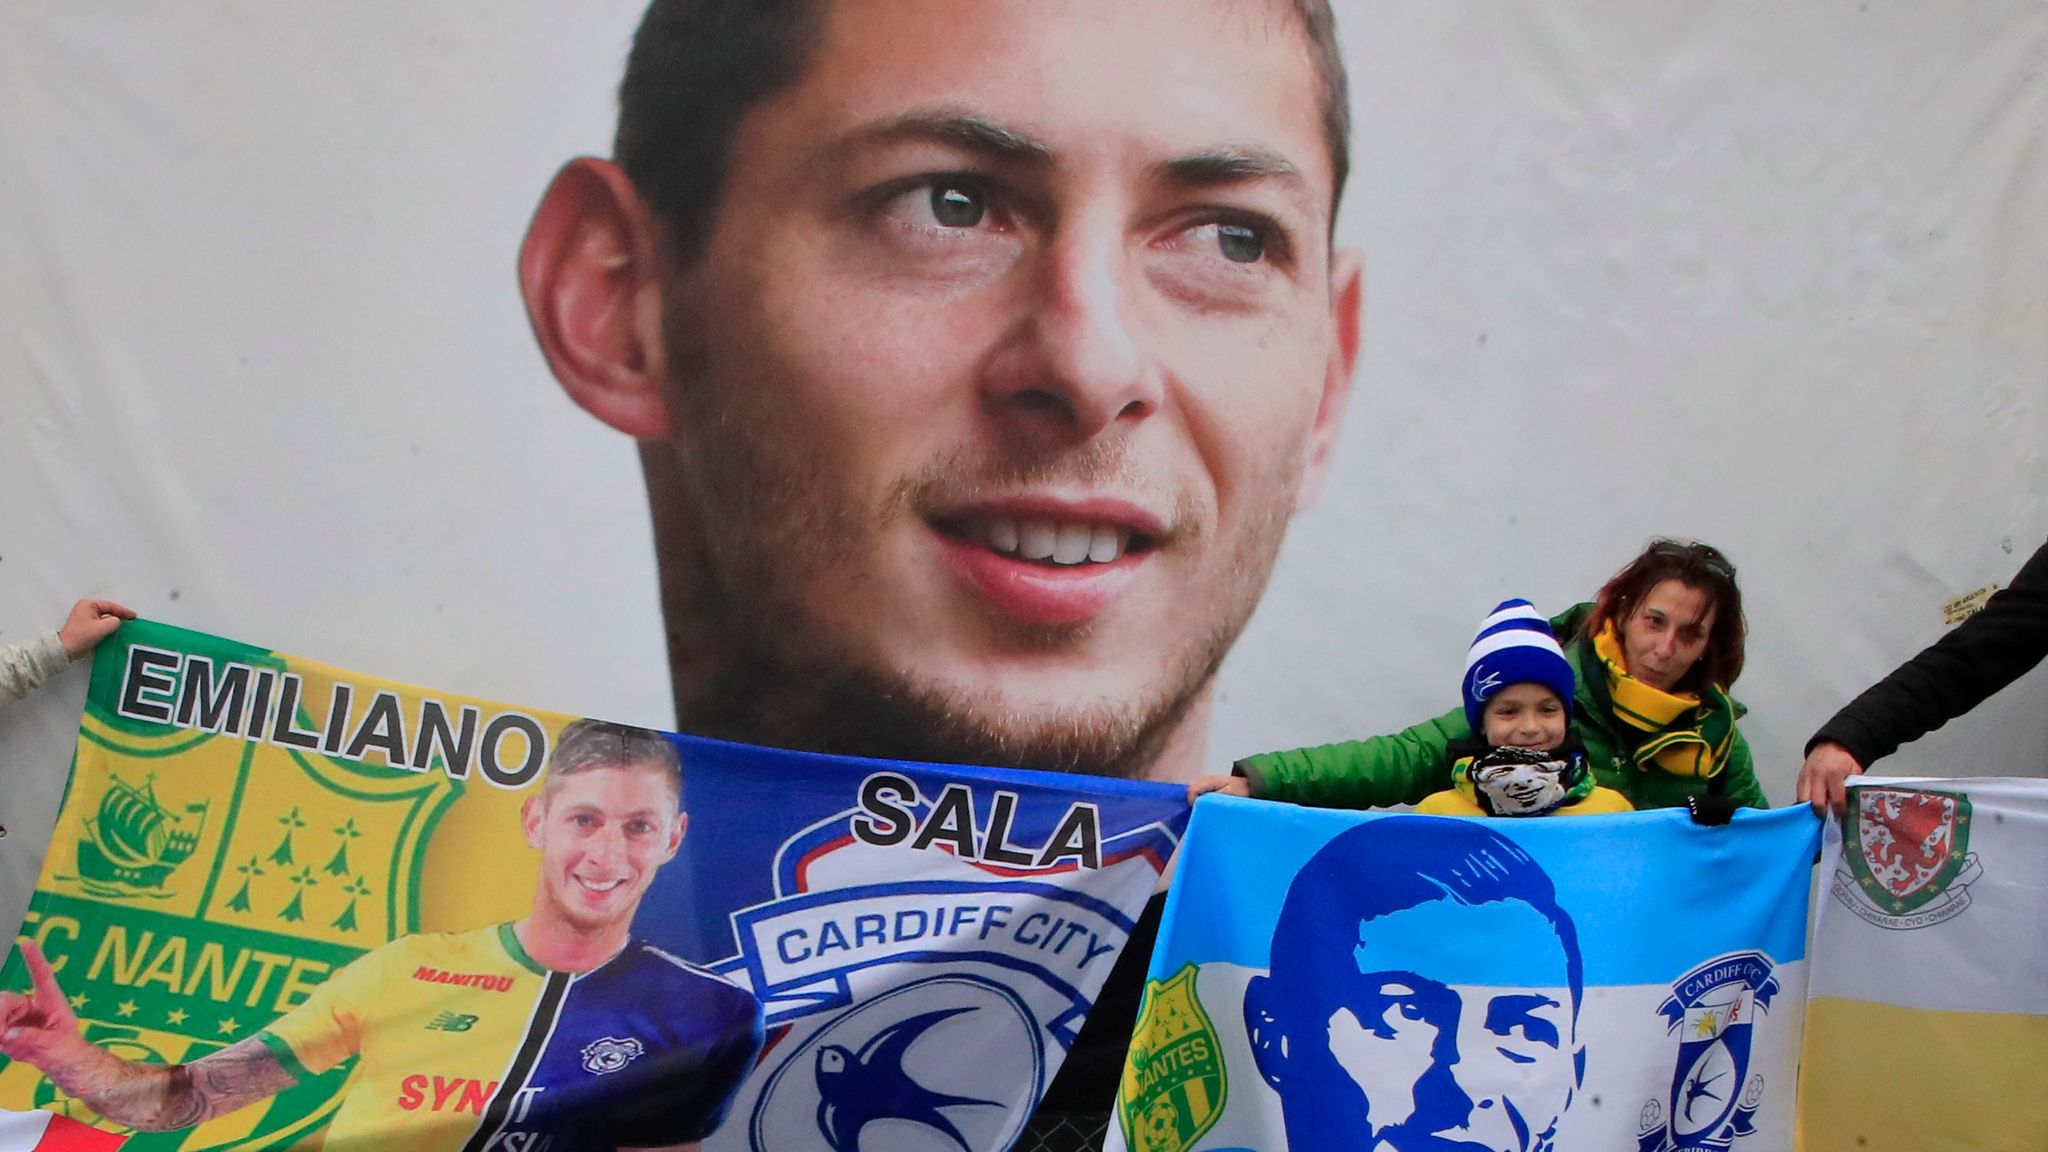 Cardiff City insurers reportedly face reprieve over Sala claim